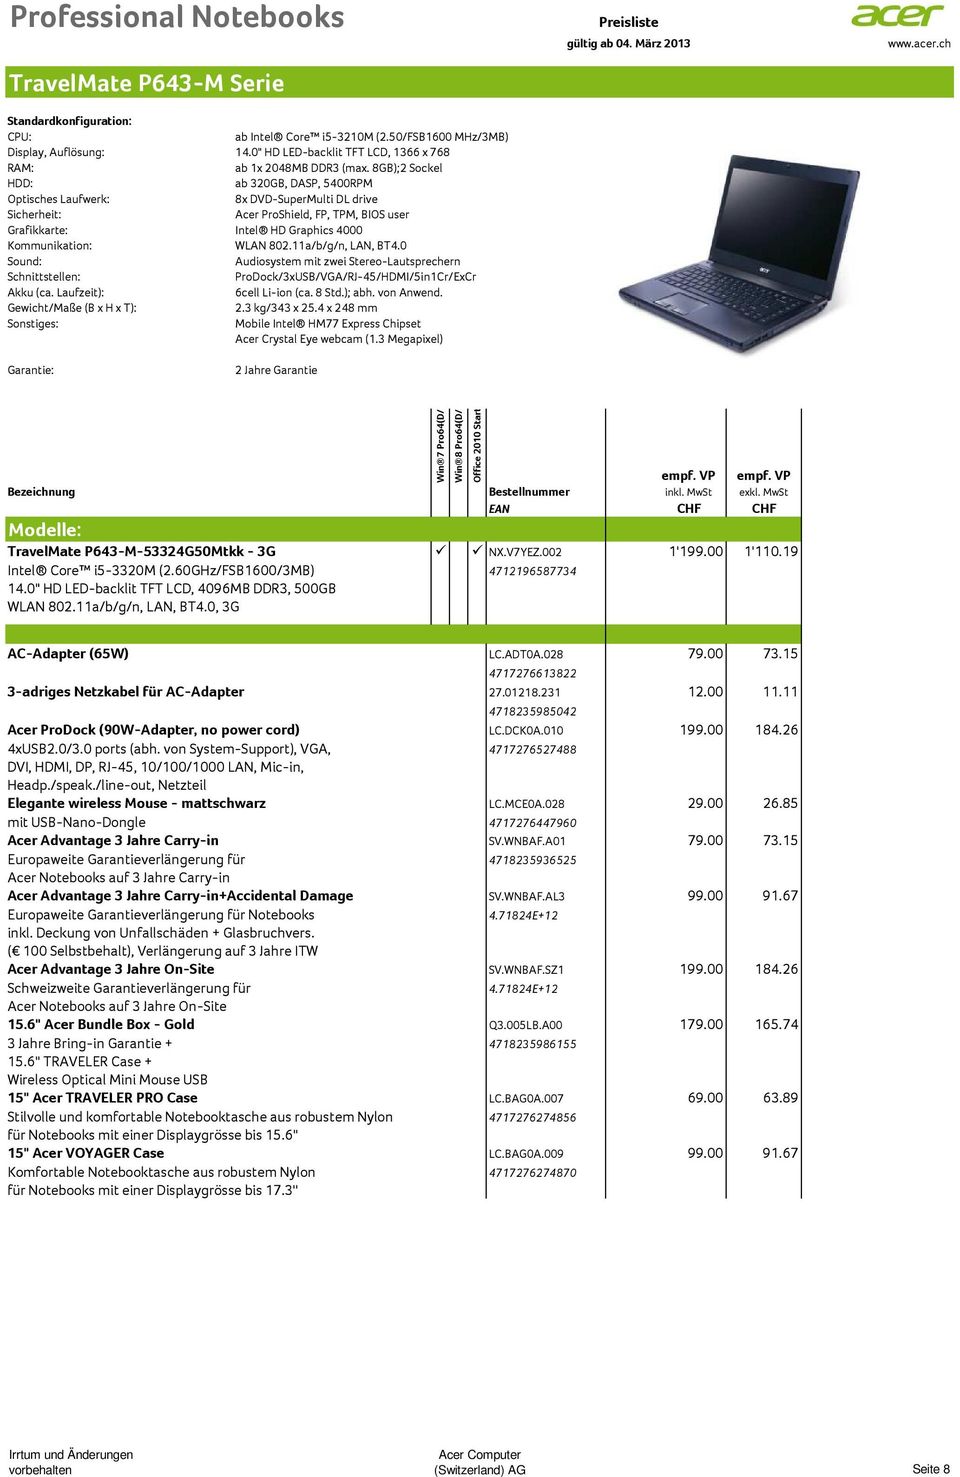 0 ProDock/3xUSB/VGA/RJ-45/HDMI/5in1Cr/ExCr 6cell Li-ion (ca. 8 Std.); abh. von Anwend. Gewicht/Maße (B x H x T): 2.3 kg/343 x 25.4 x 248 mm Acer Crystal Eye webcam (1.